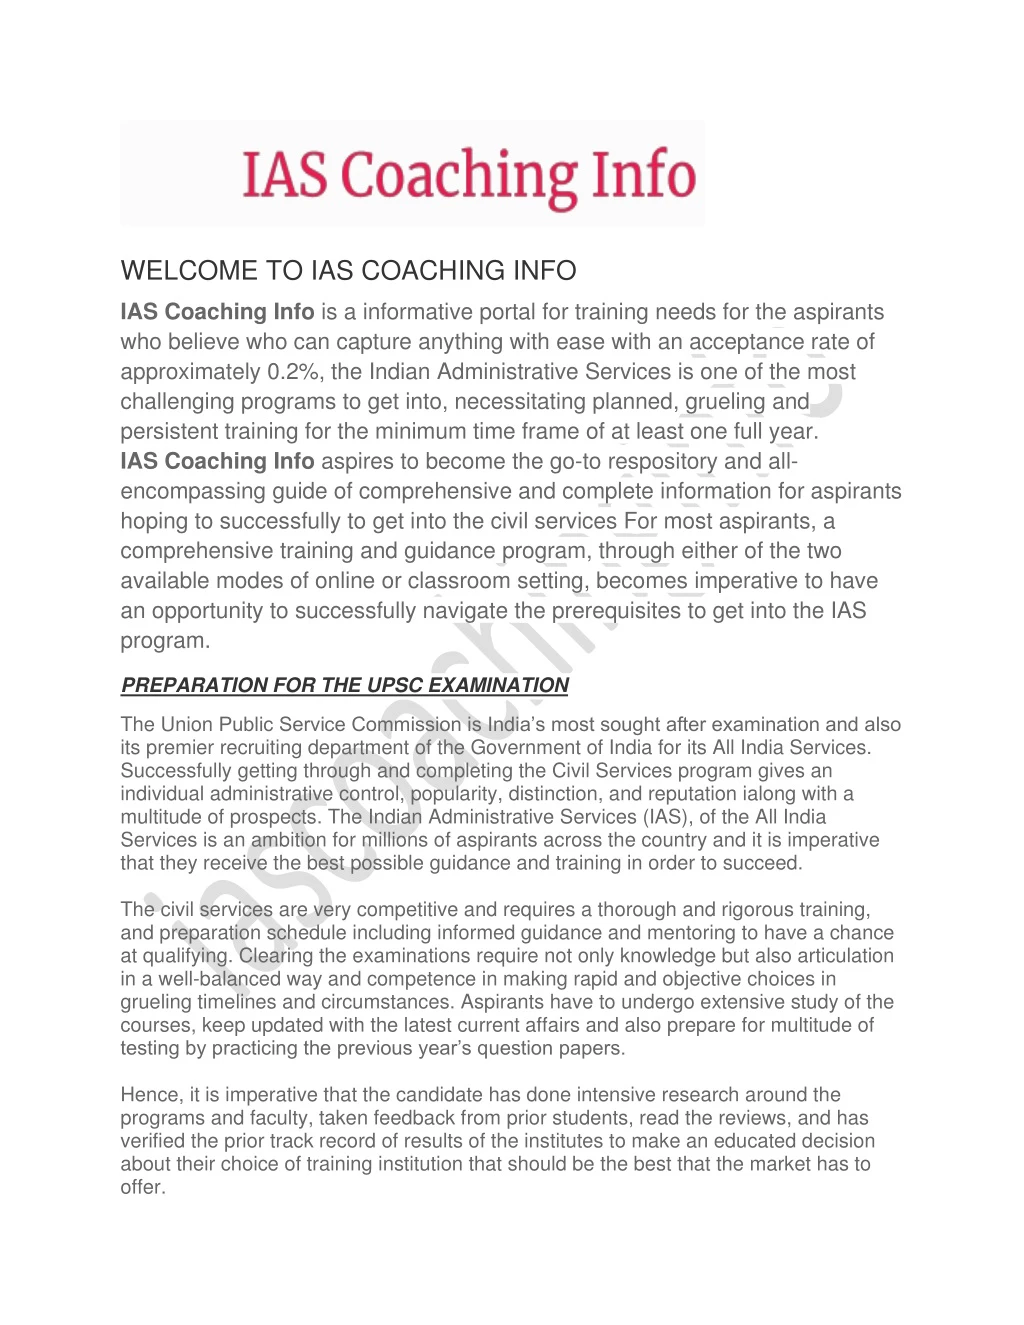 welcome to ias coaching info